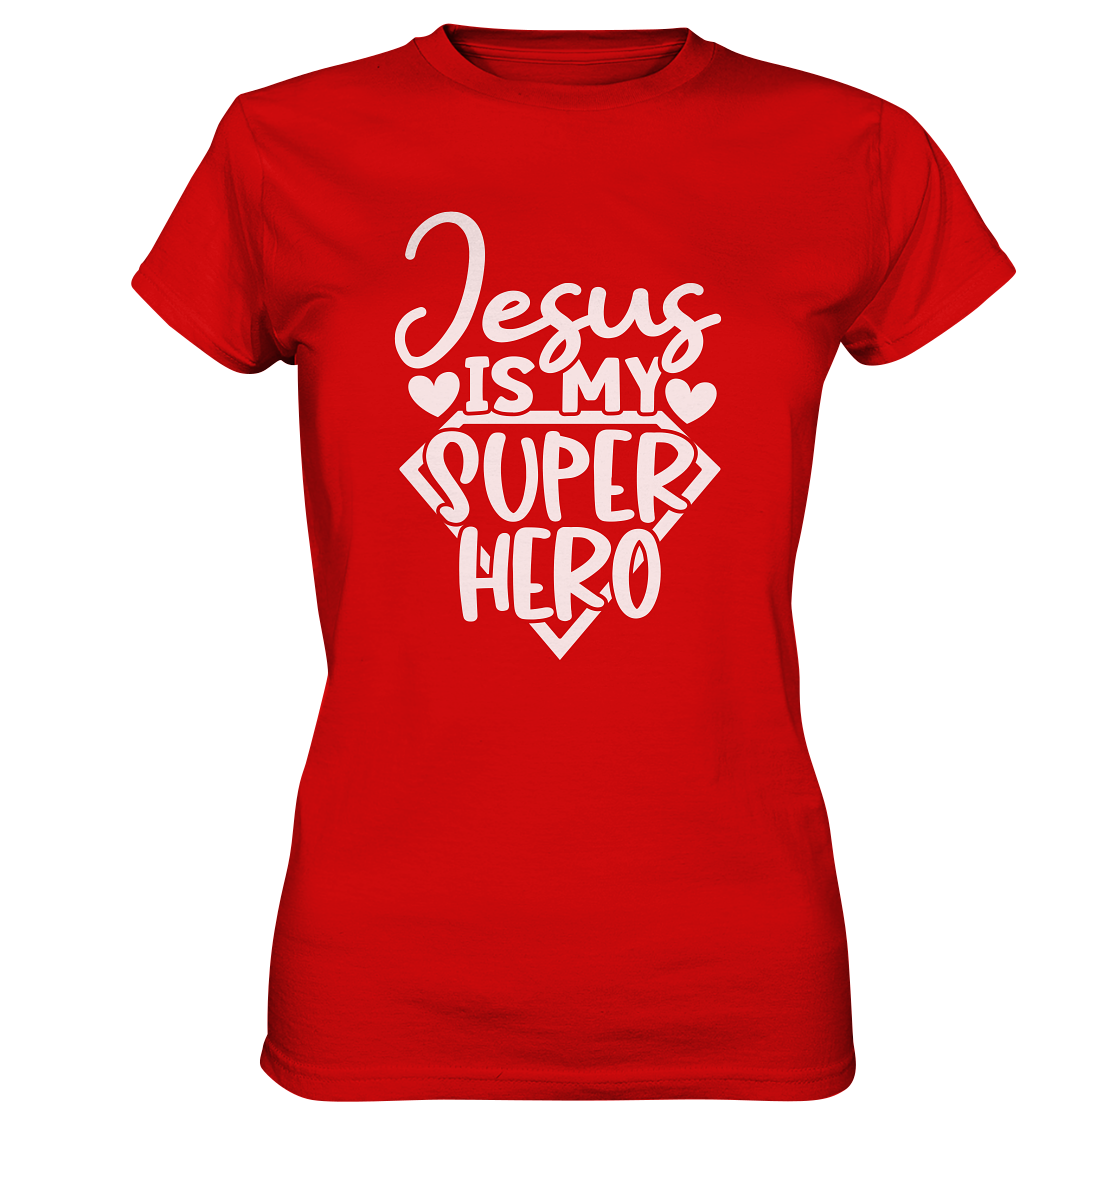 Jesus ist mein Superheld - Ladies Premium Shirt